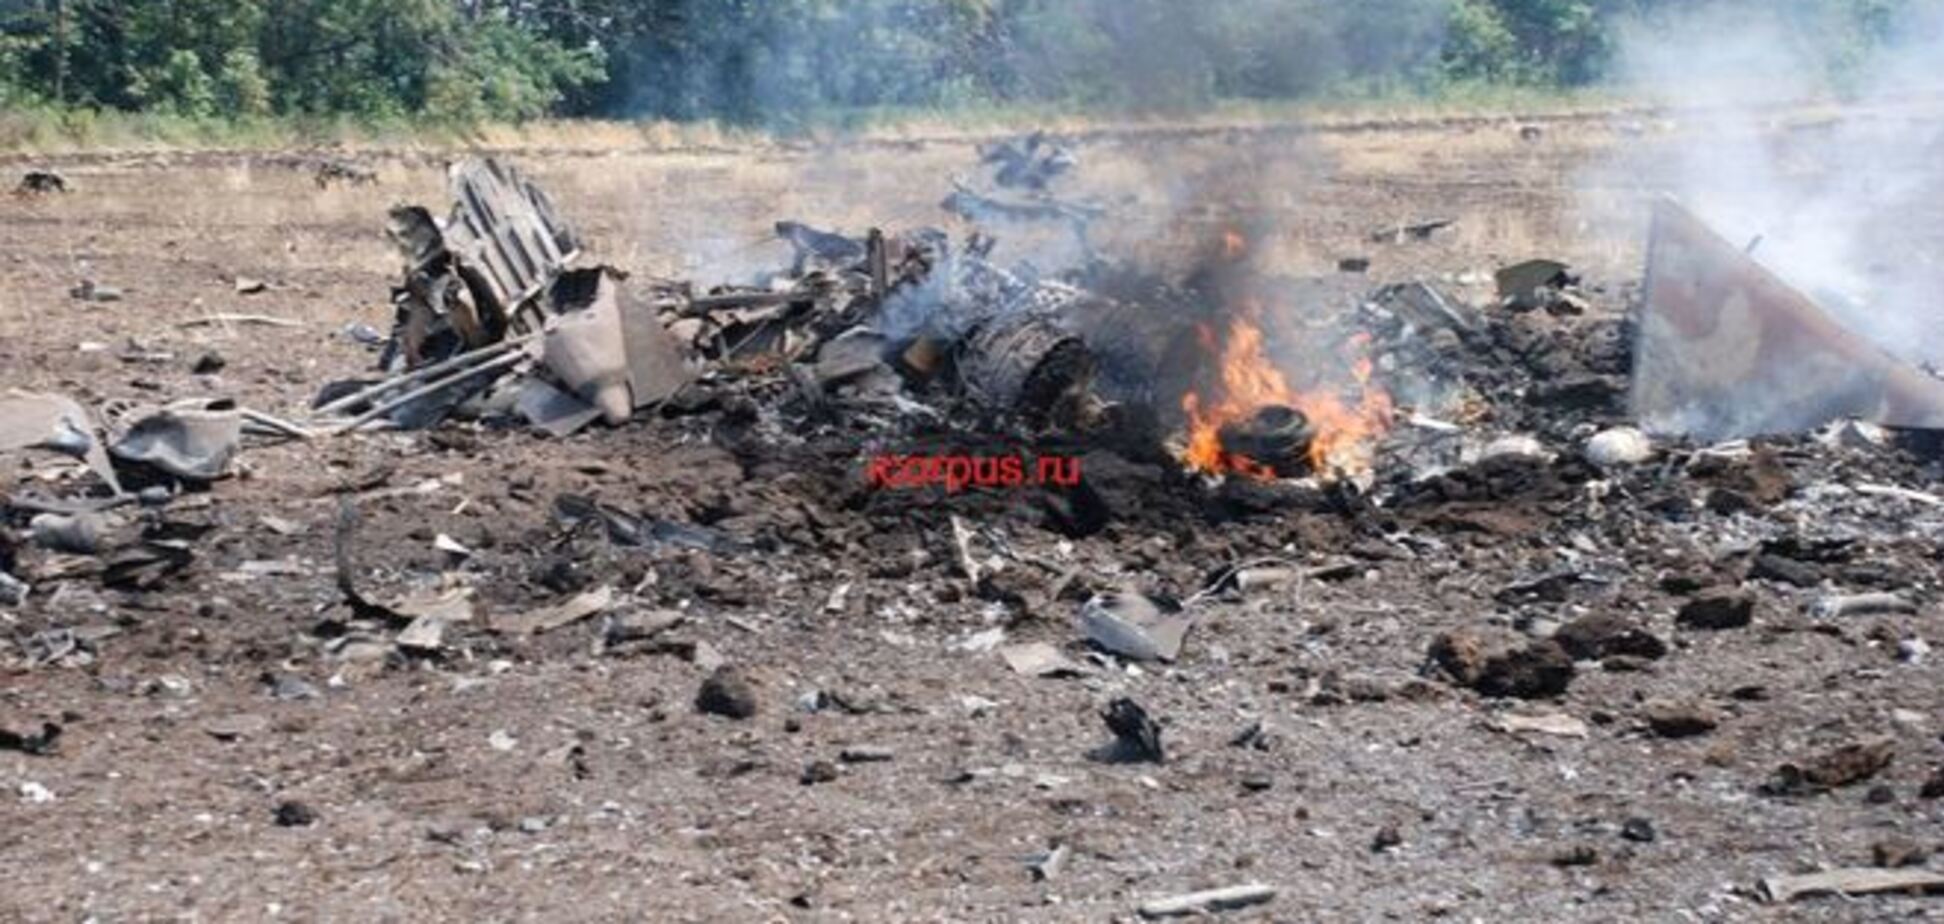 Украинские СУ-25 были сбиты предположительно с территории РФ